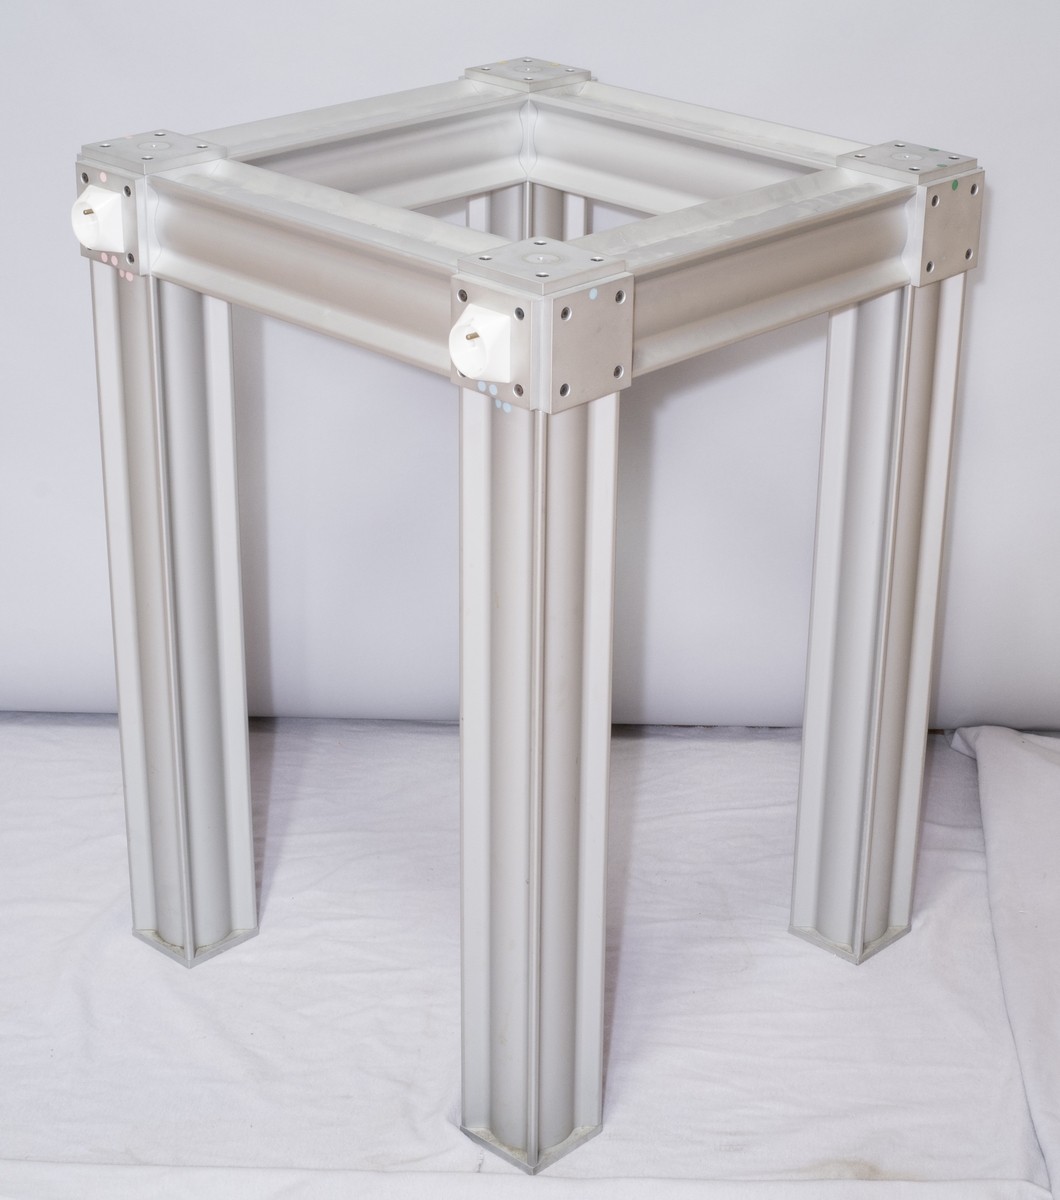 Laboratoriebord med bordskiva av marmor med benställning av aluminiumprofiler. I benställningen finns två eluttag och en anslutning för apparatsladd.